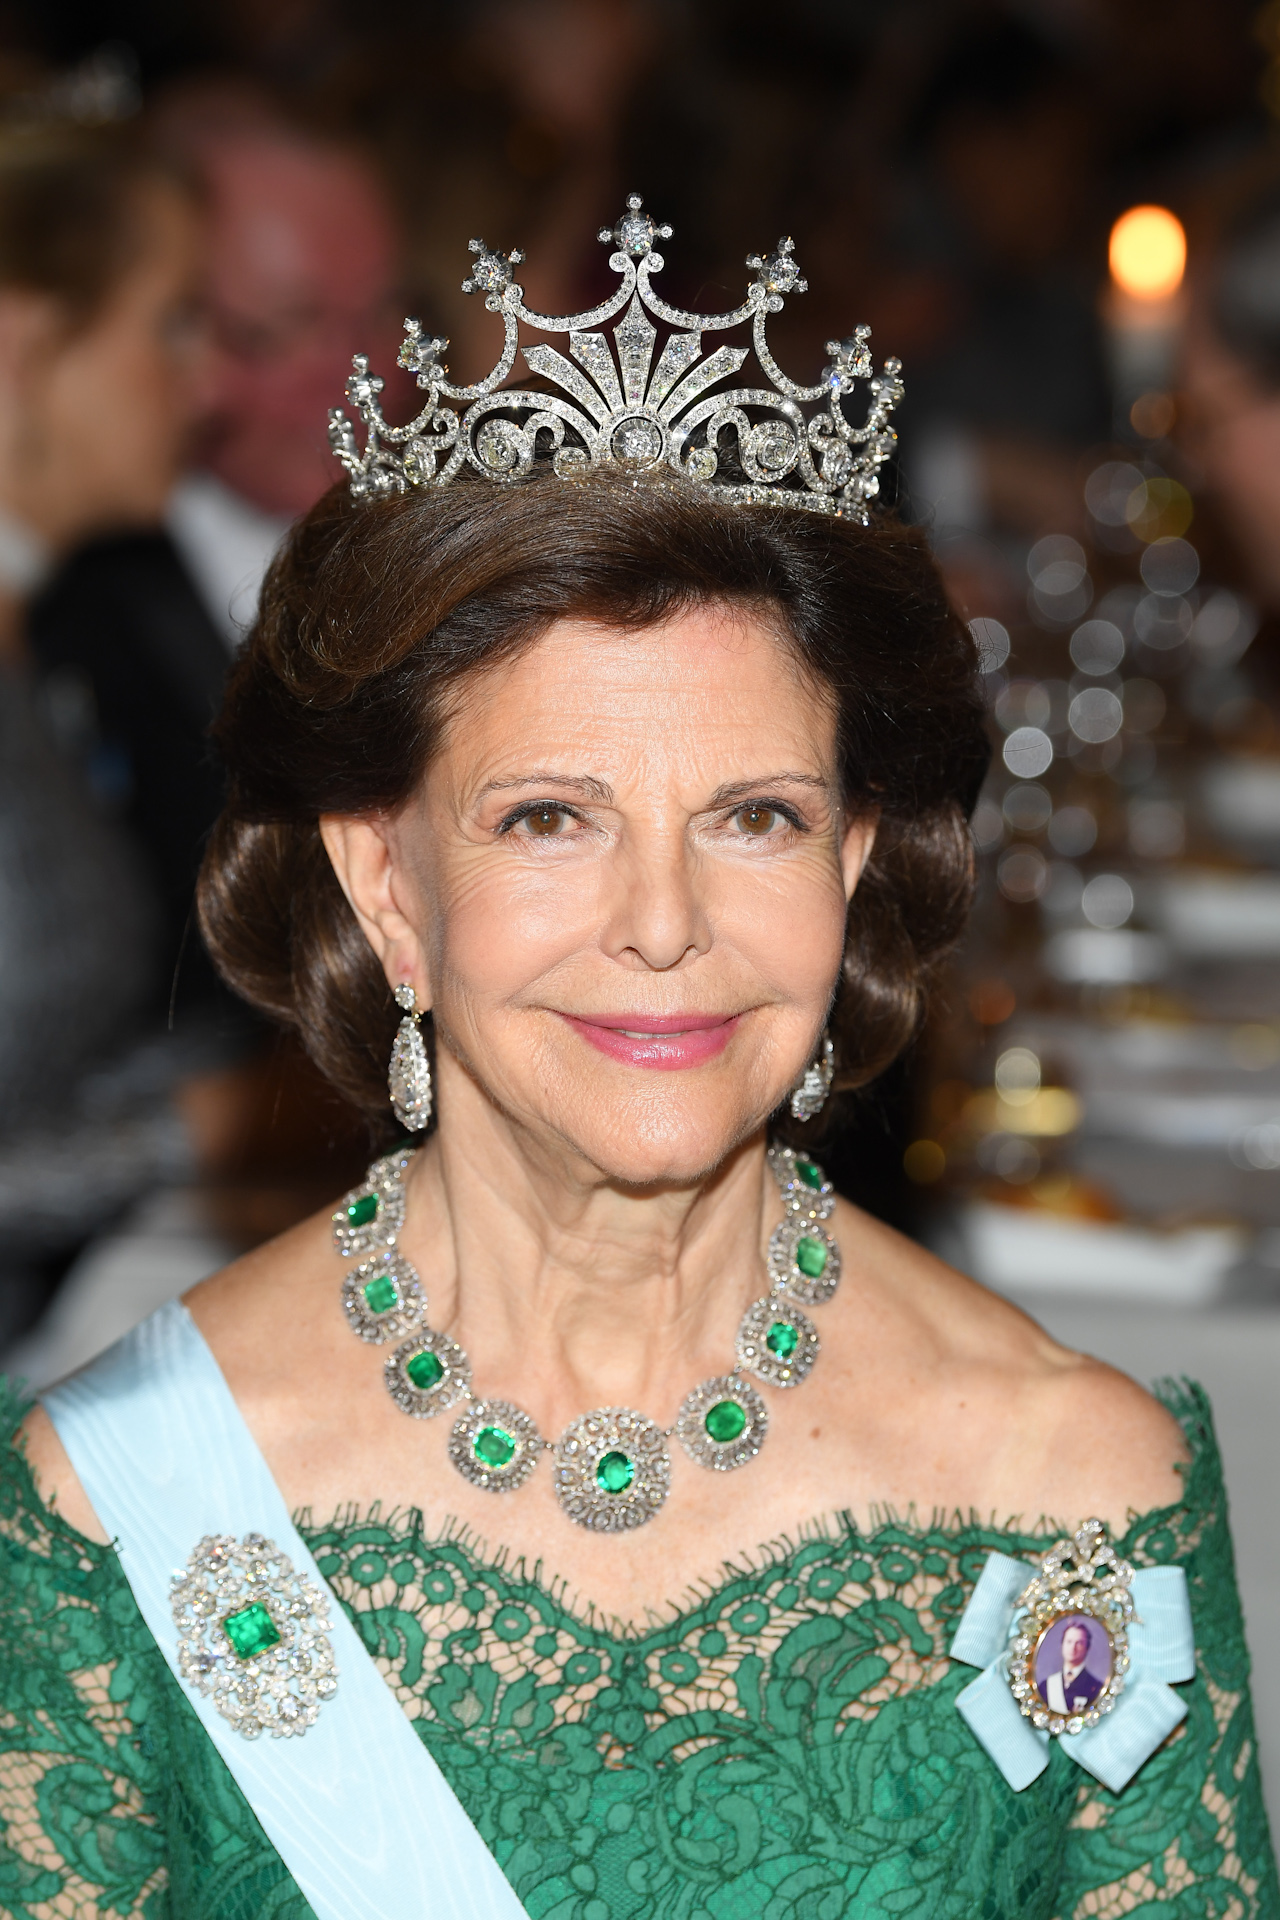 <p>Las mejores fotos de la Reina Silvia</p>